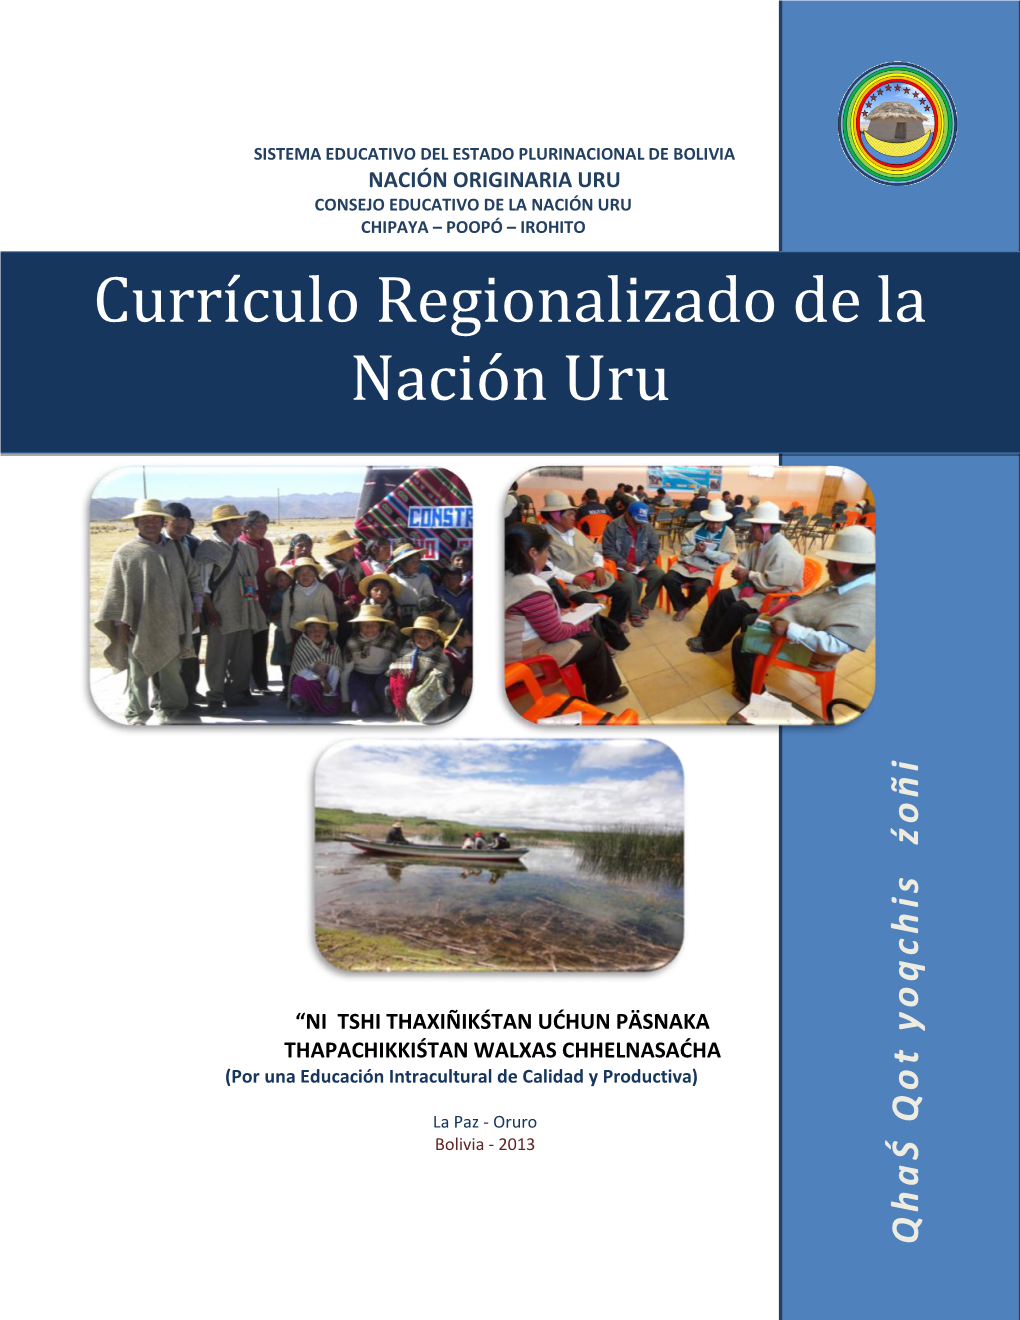 Currículo Regionalizado De La Nación Uru